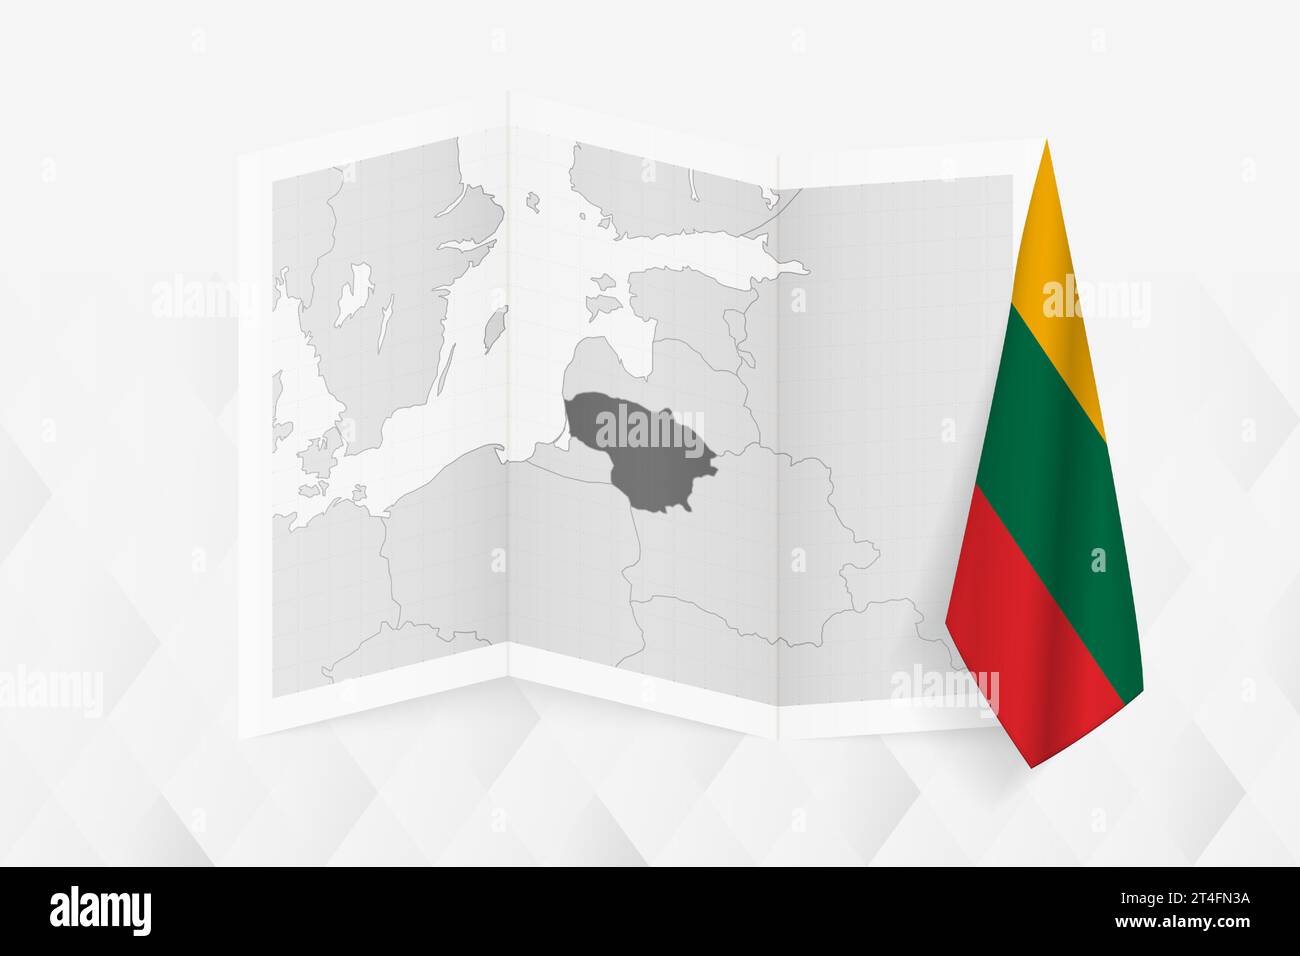 Una mappa in scala di grigi della Lituania con una bandiera lituana appesa su un lato. Mappa vettoriale per molti tipi di notizie. Illustrazione vettoriale. Illustrazione Vettoriale